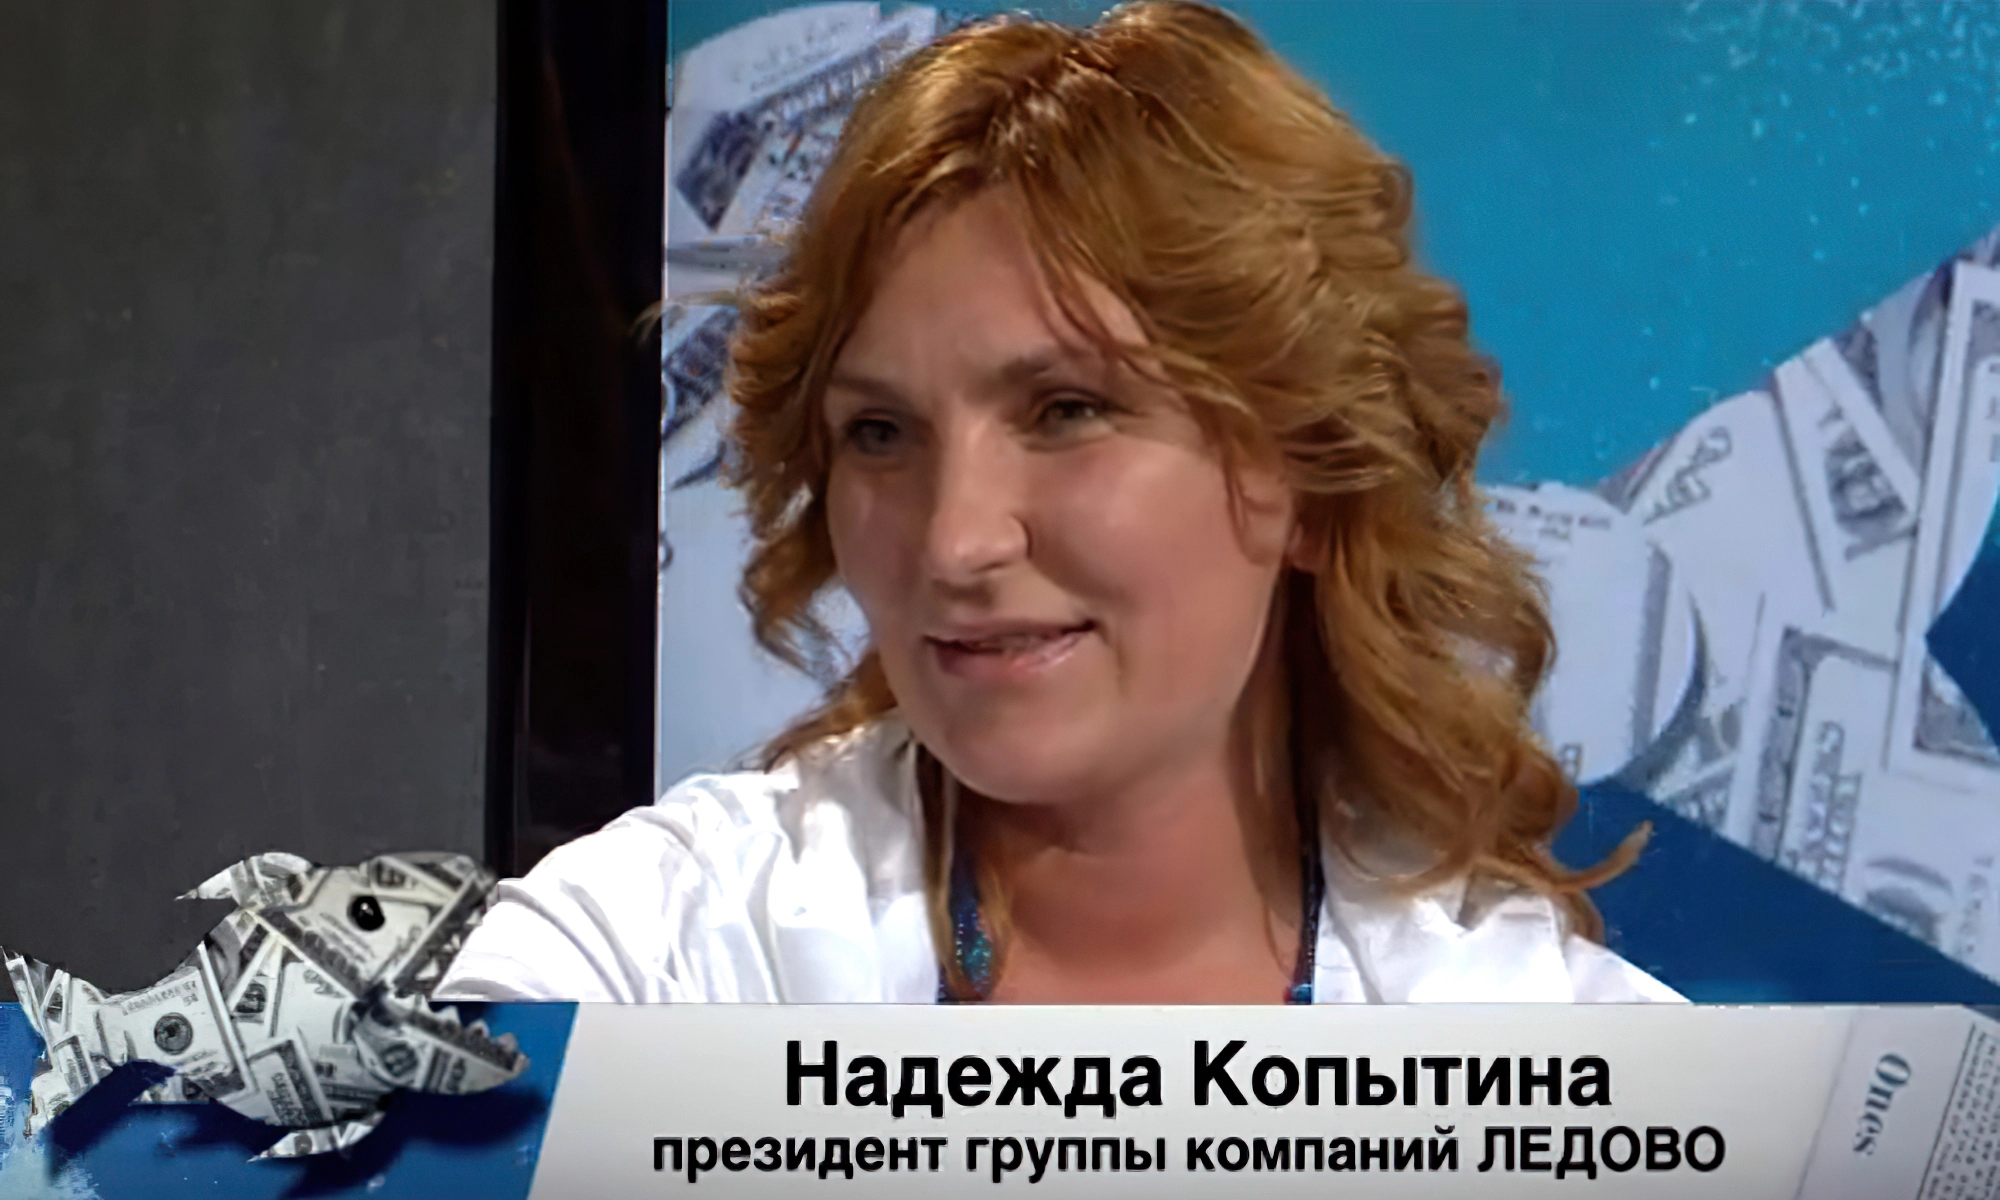 Надежда Копытина - основательница и президент группы компаний «Лёдово»